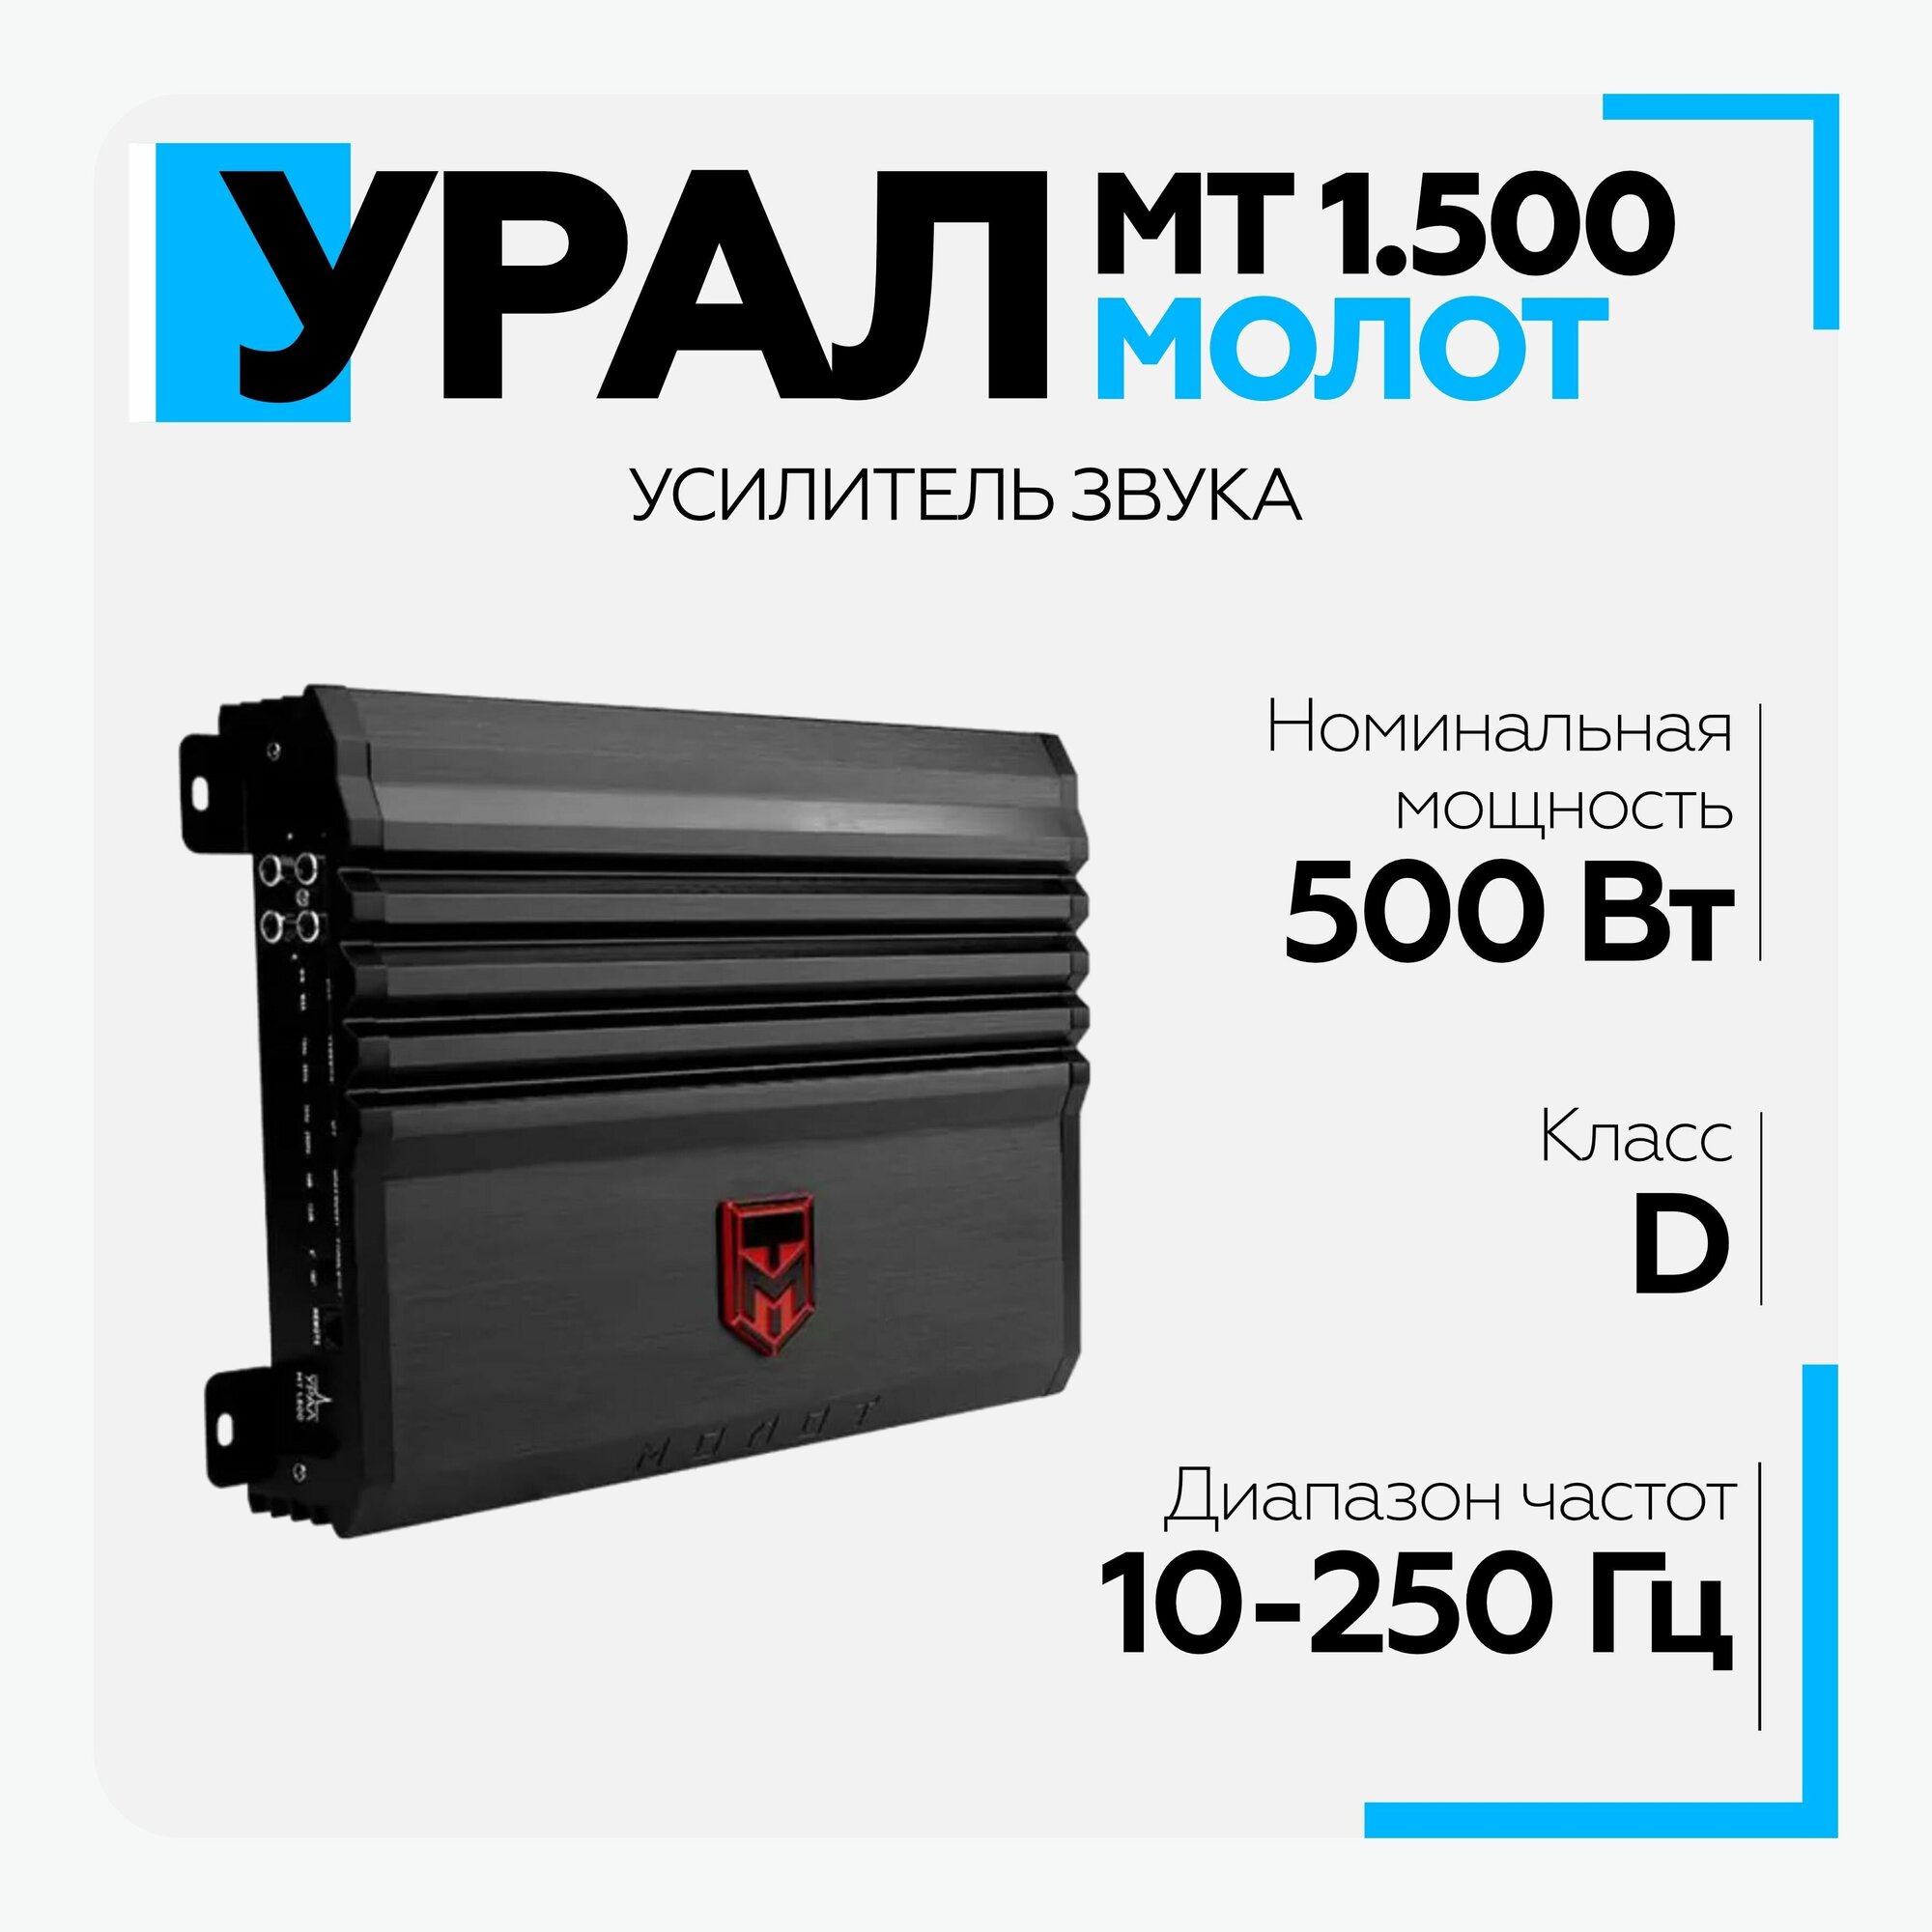 Усилитель Ural молот МТ 1.500